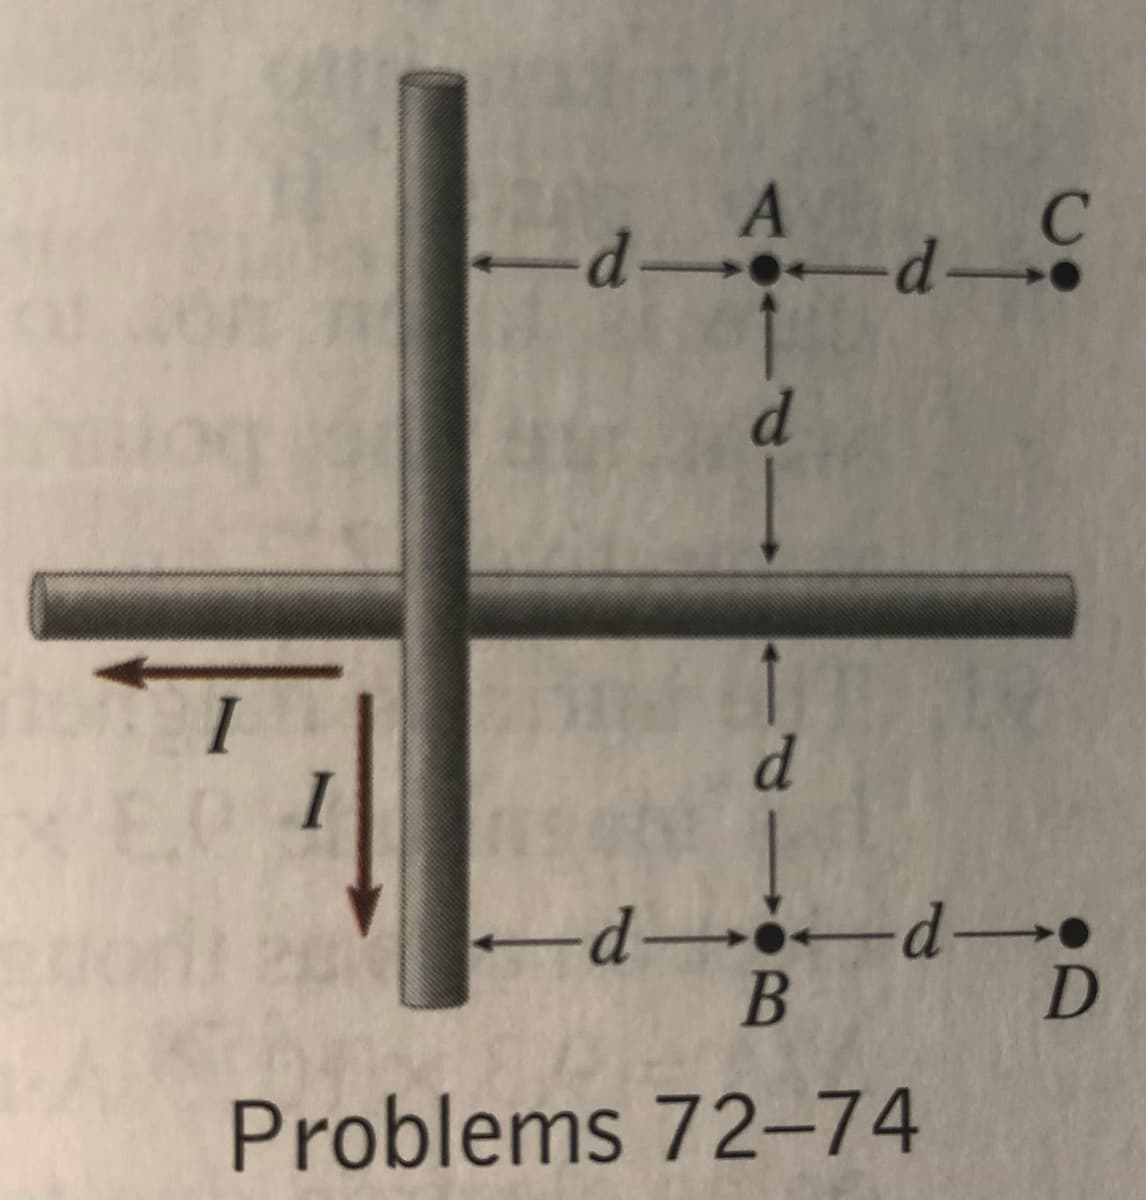 -d-
d.
-d--d-
Problems 72–74
